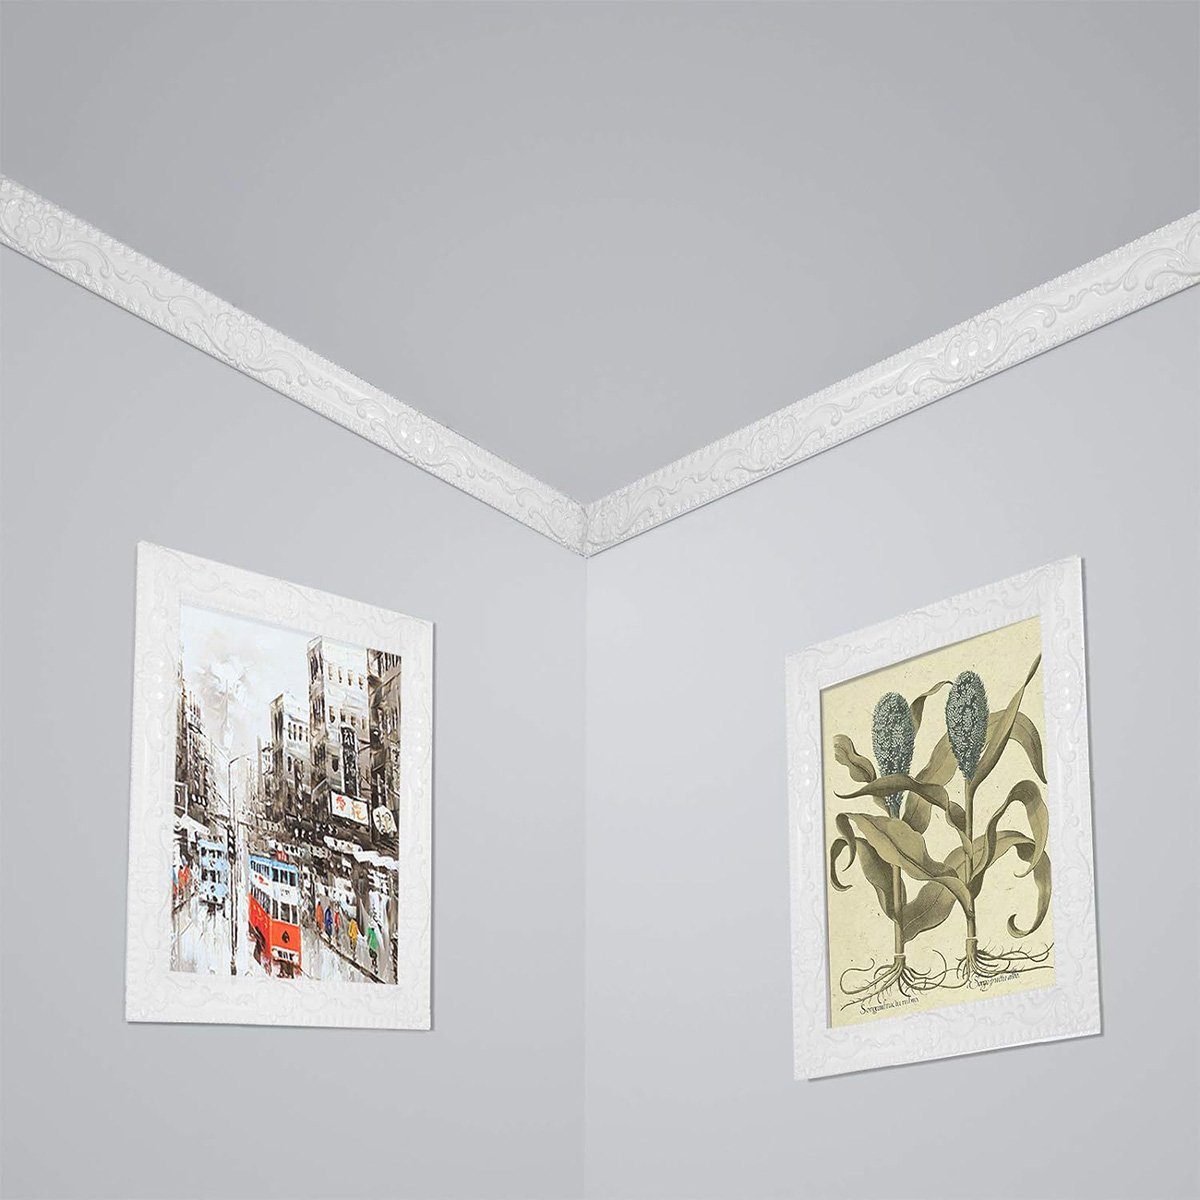 & Abziehen, – ft. Silber 16,4 aufkleben 1,4 Wanddekorationen, Sockelleiste für Einfassung götäzer flexible Selbstklebende Spiegelrahmen. Decken x in: